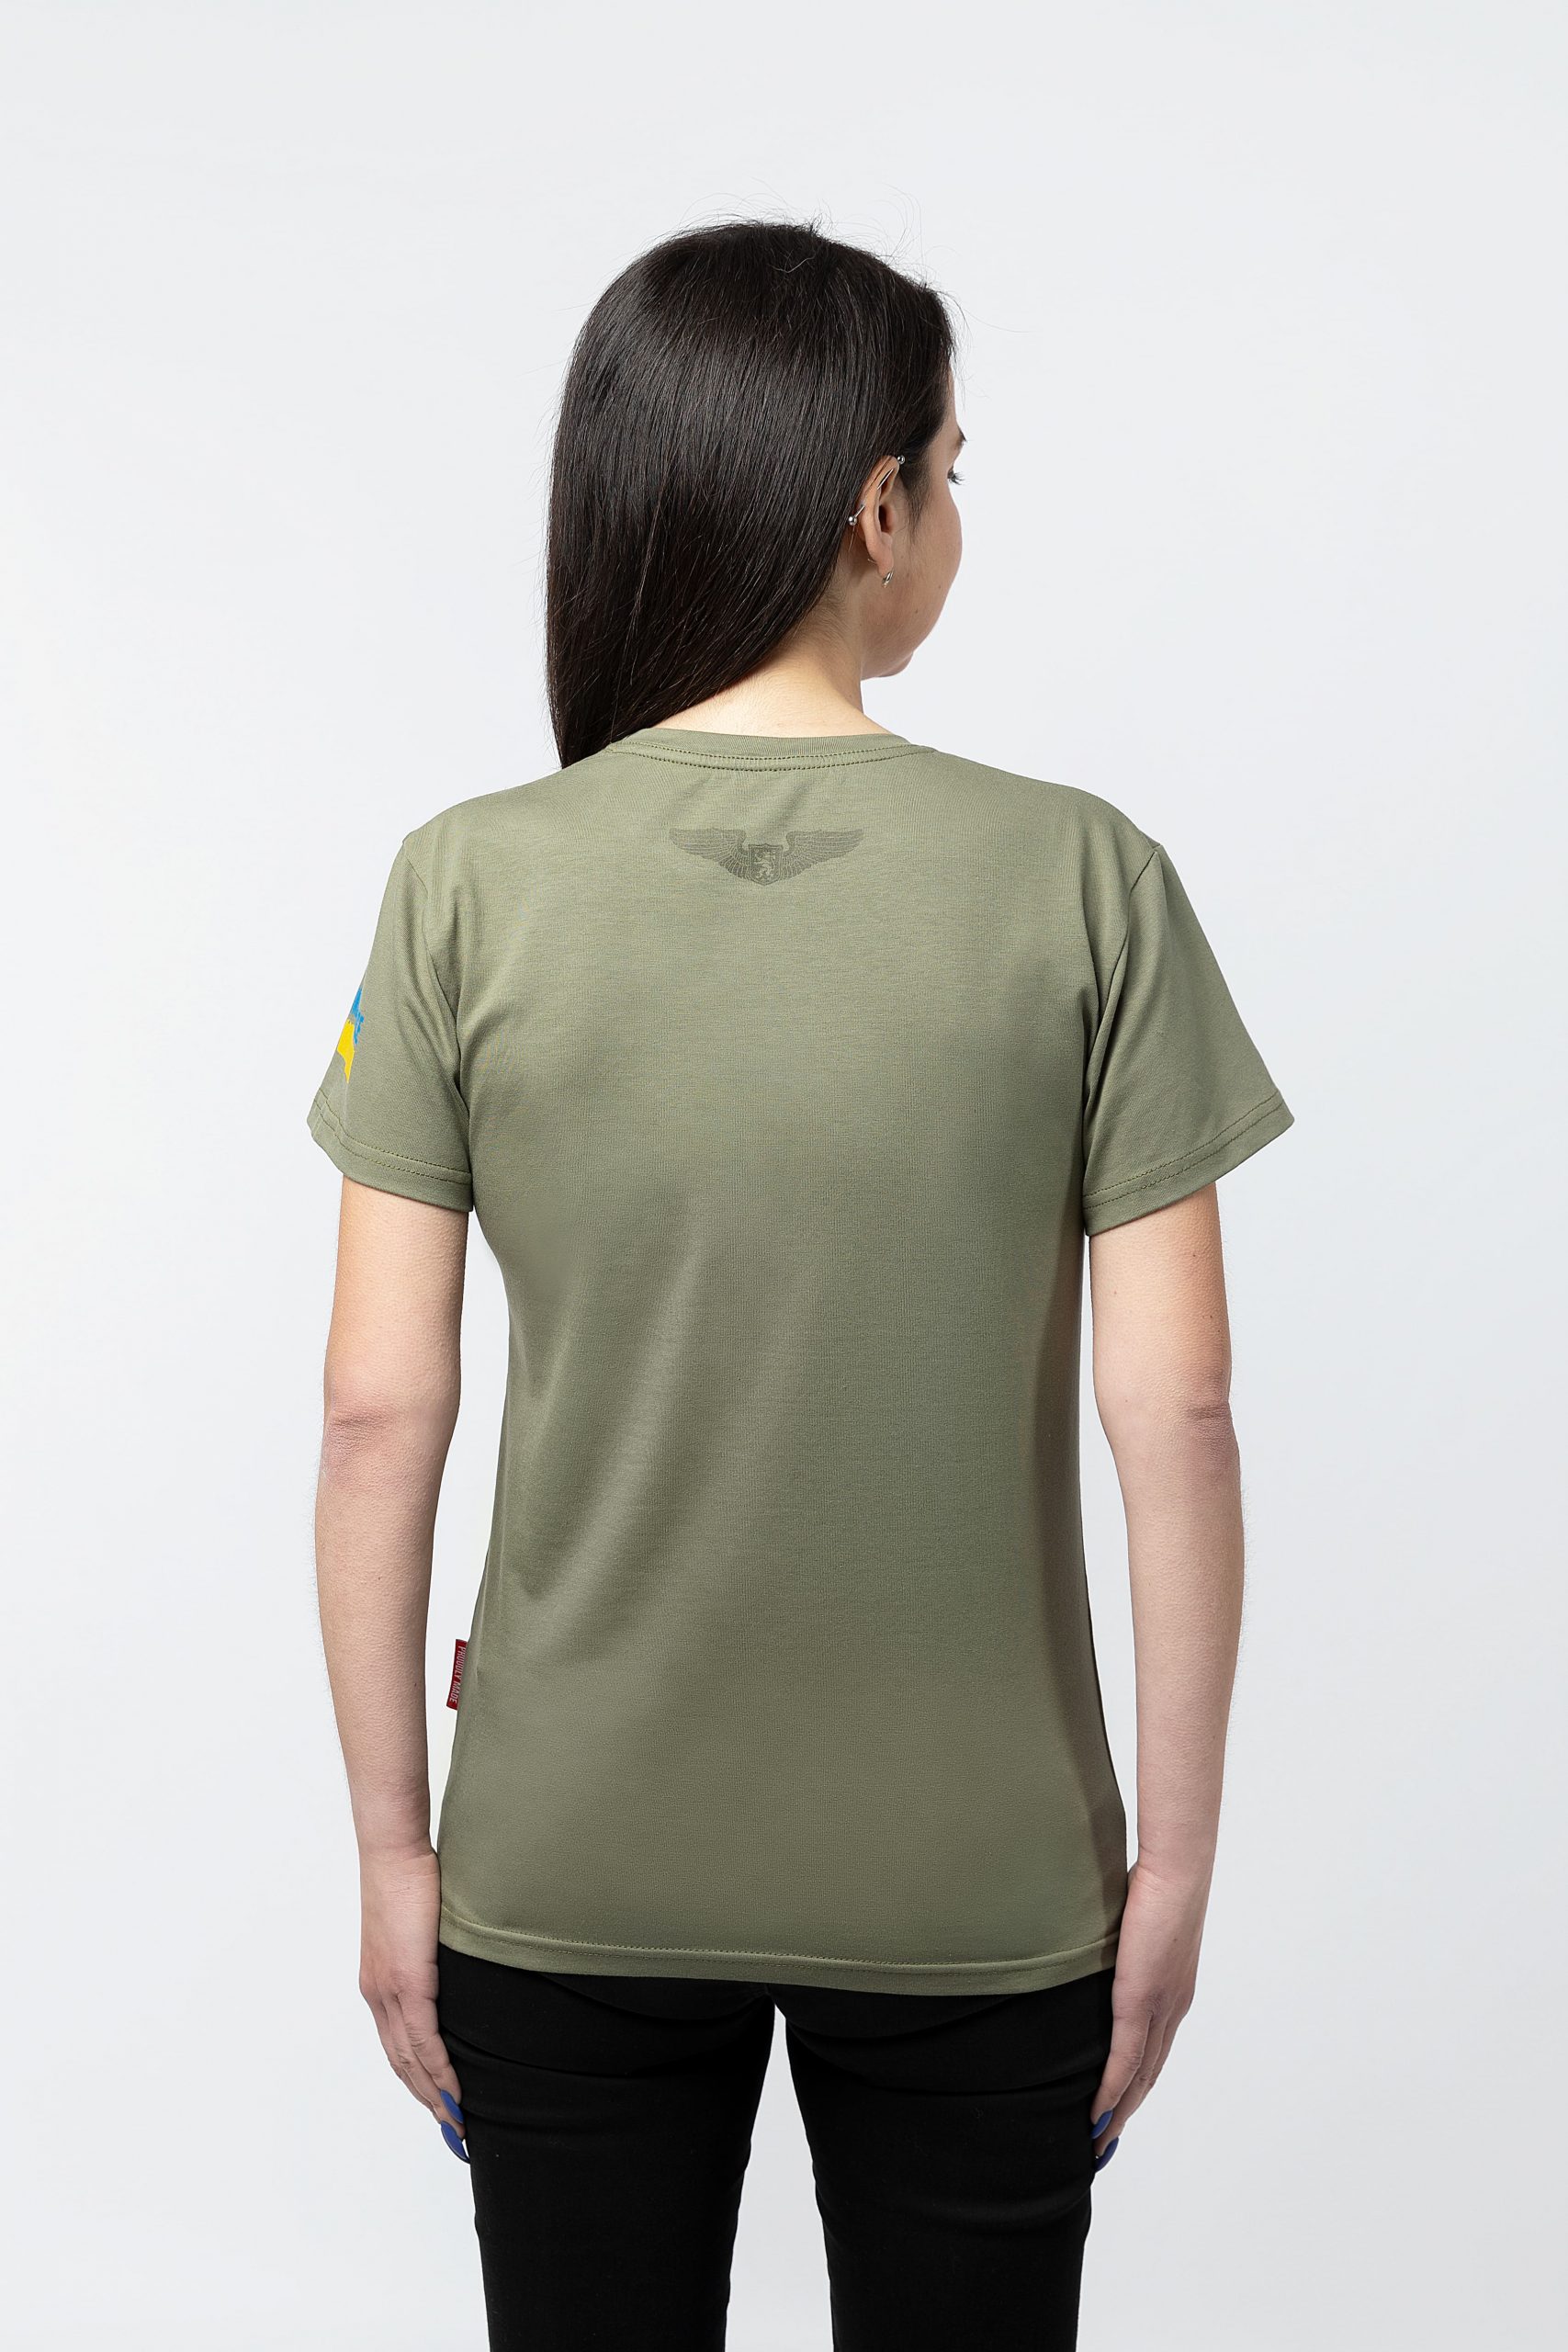 Women's T-Shirt Chornobaivka. Color khaki. 1.